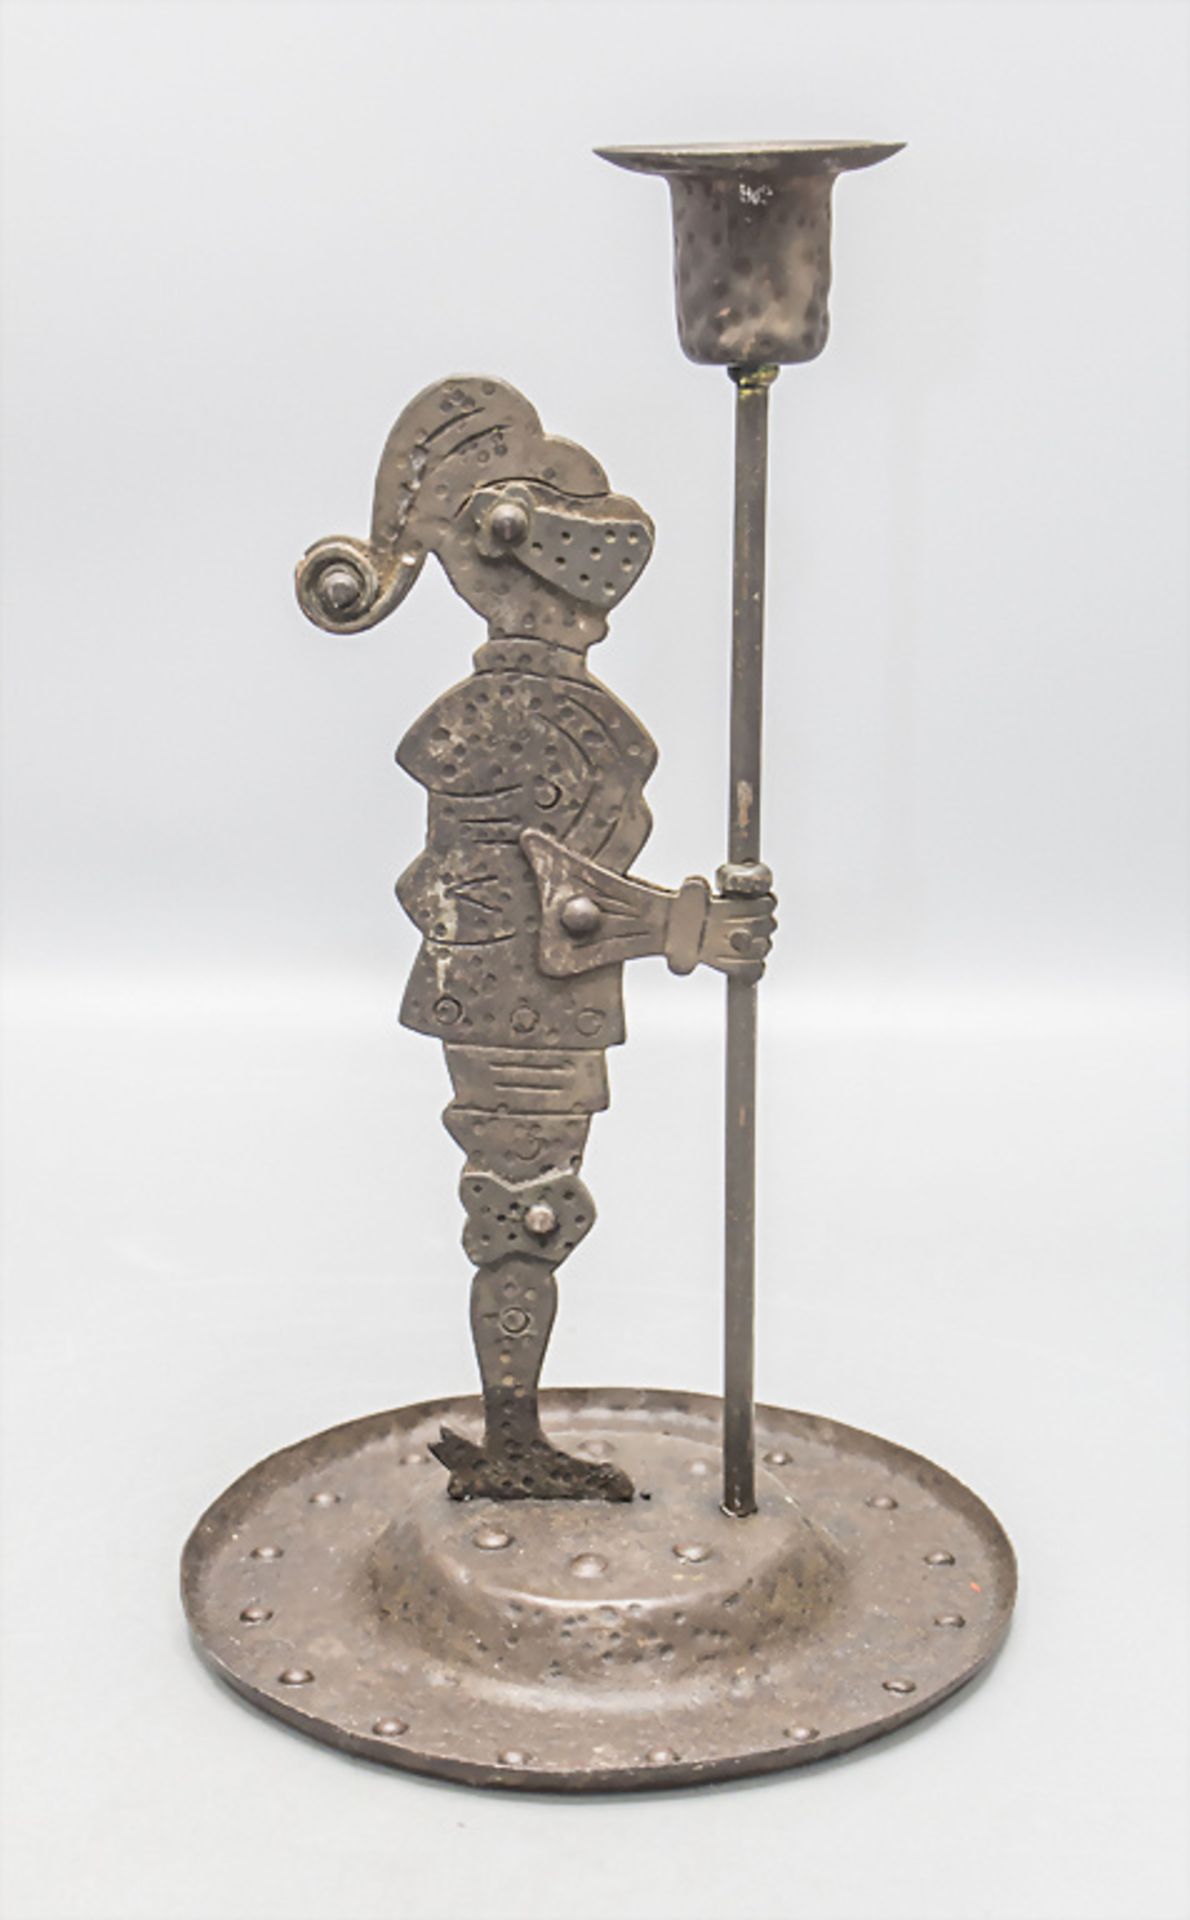 Jugendstil Ritter mit Kerzenleuchter / An Art Nouveau knight with a candle holder, Hugo ... - Bild 2 aus 5